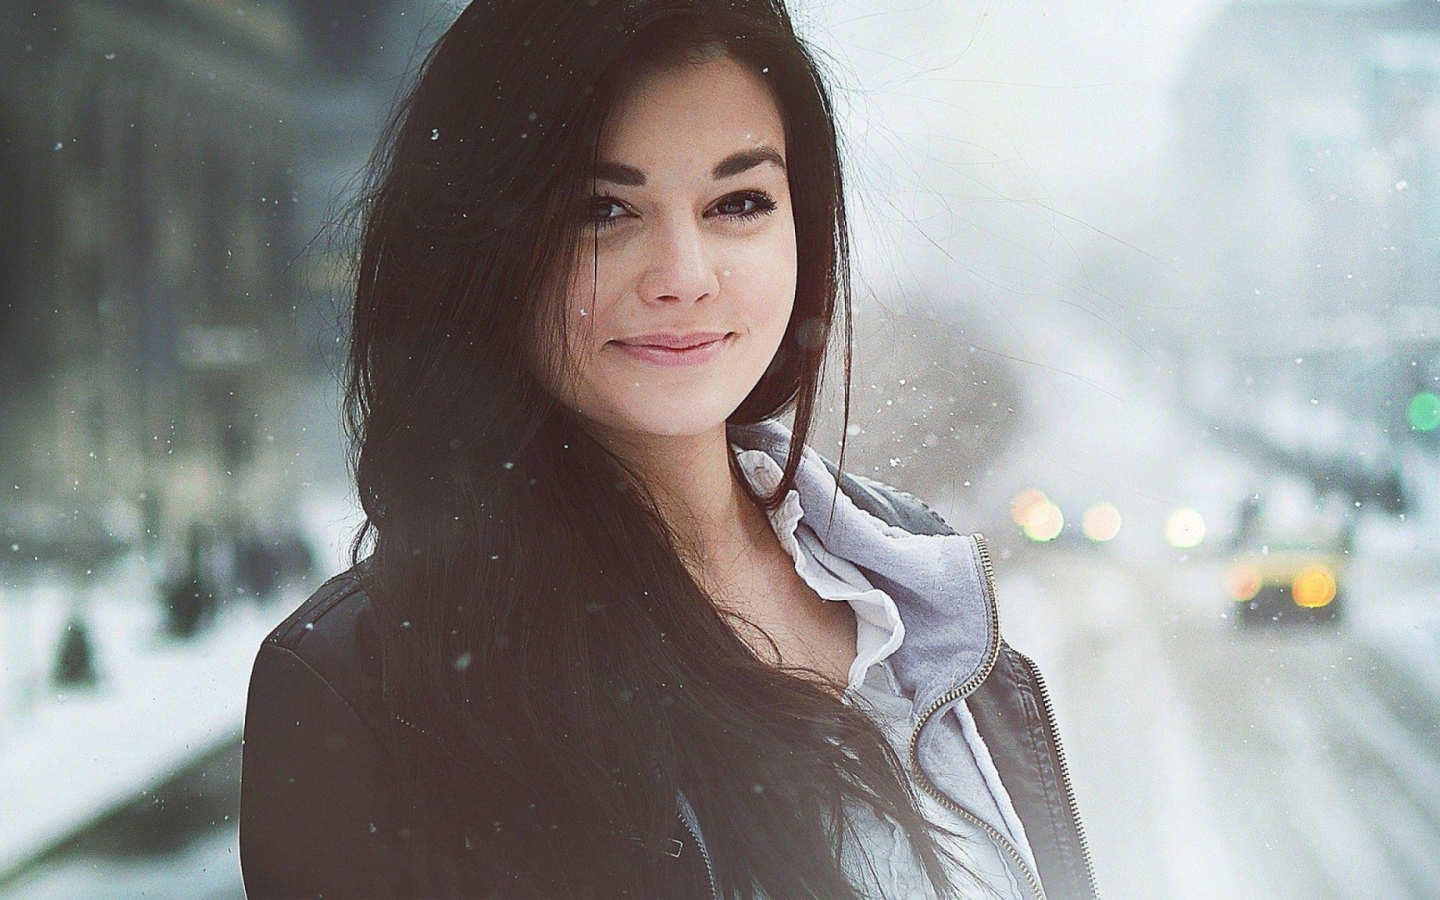 Brunette girl among snowfall